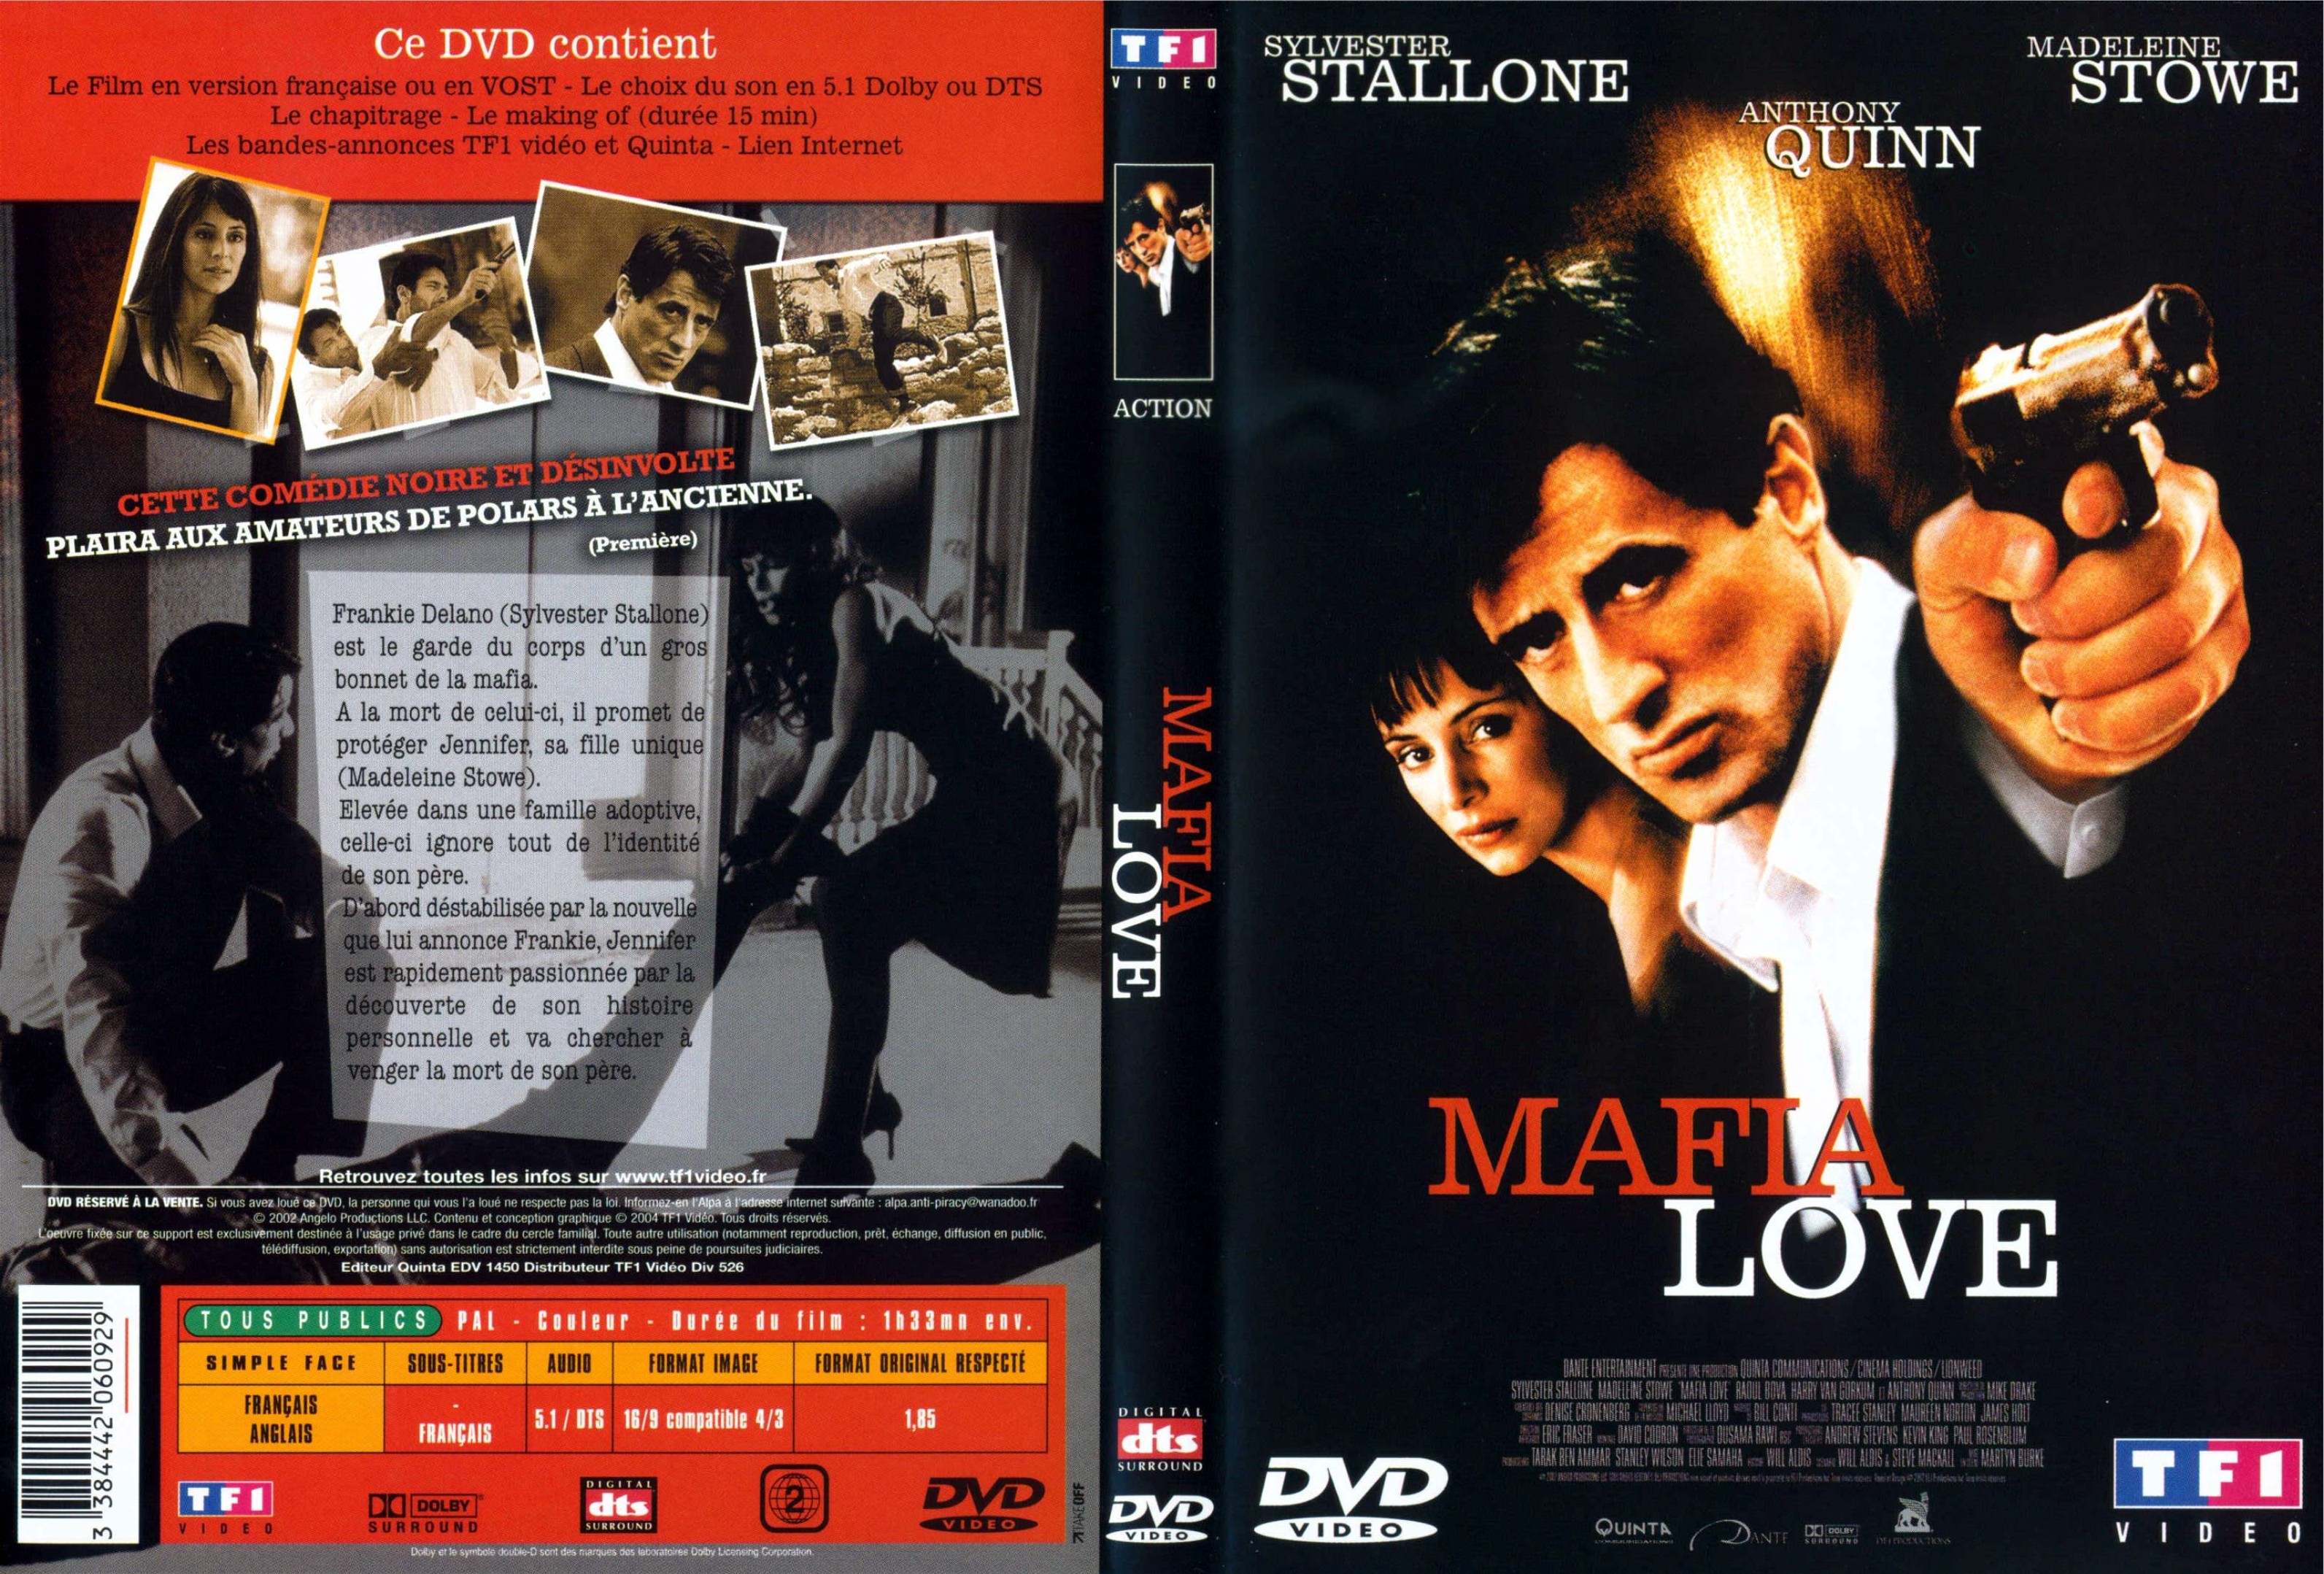 Jaquette DVD Mafia love